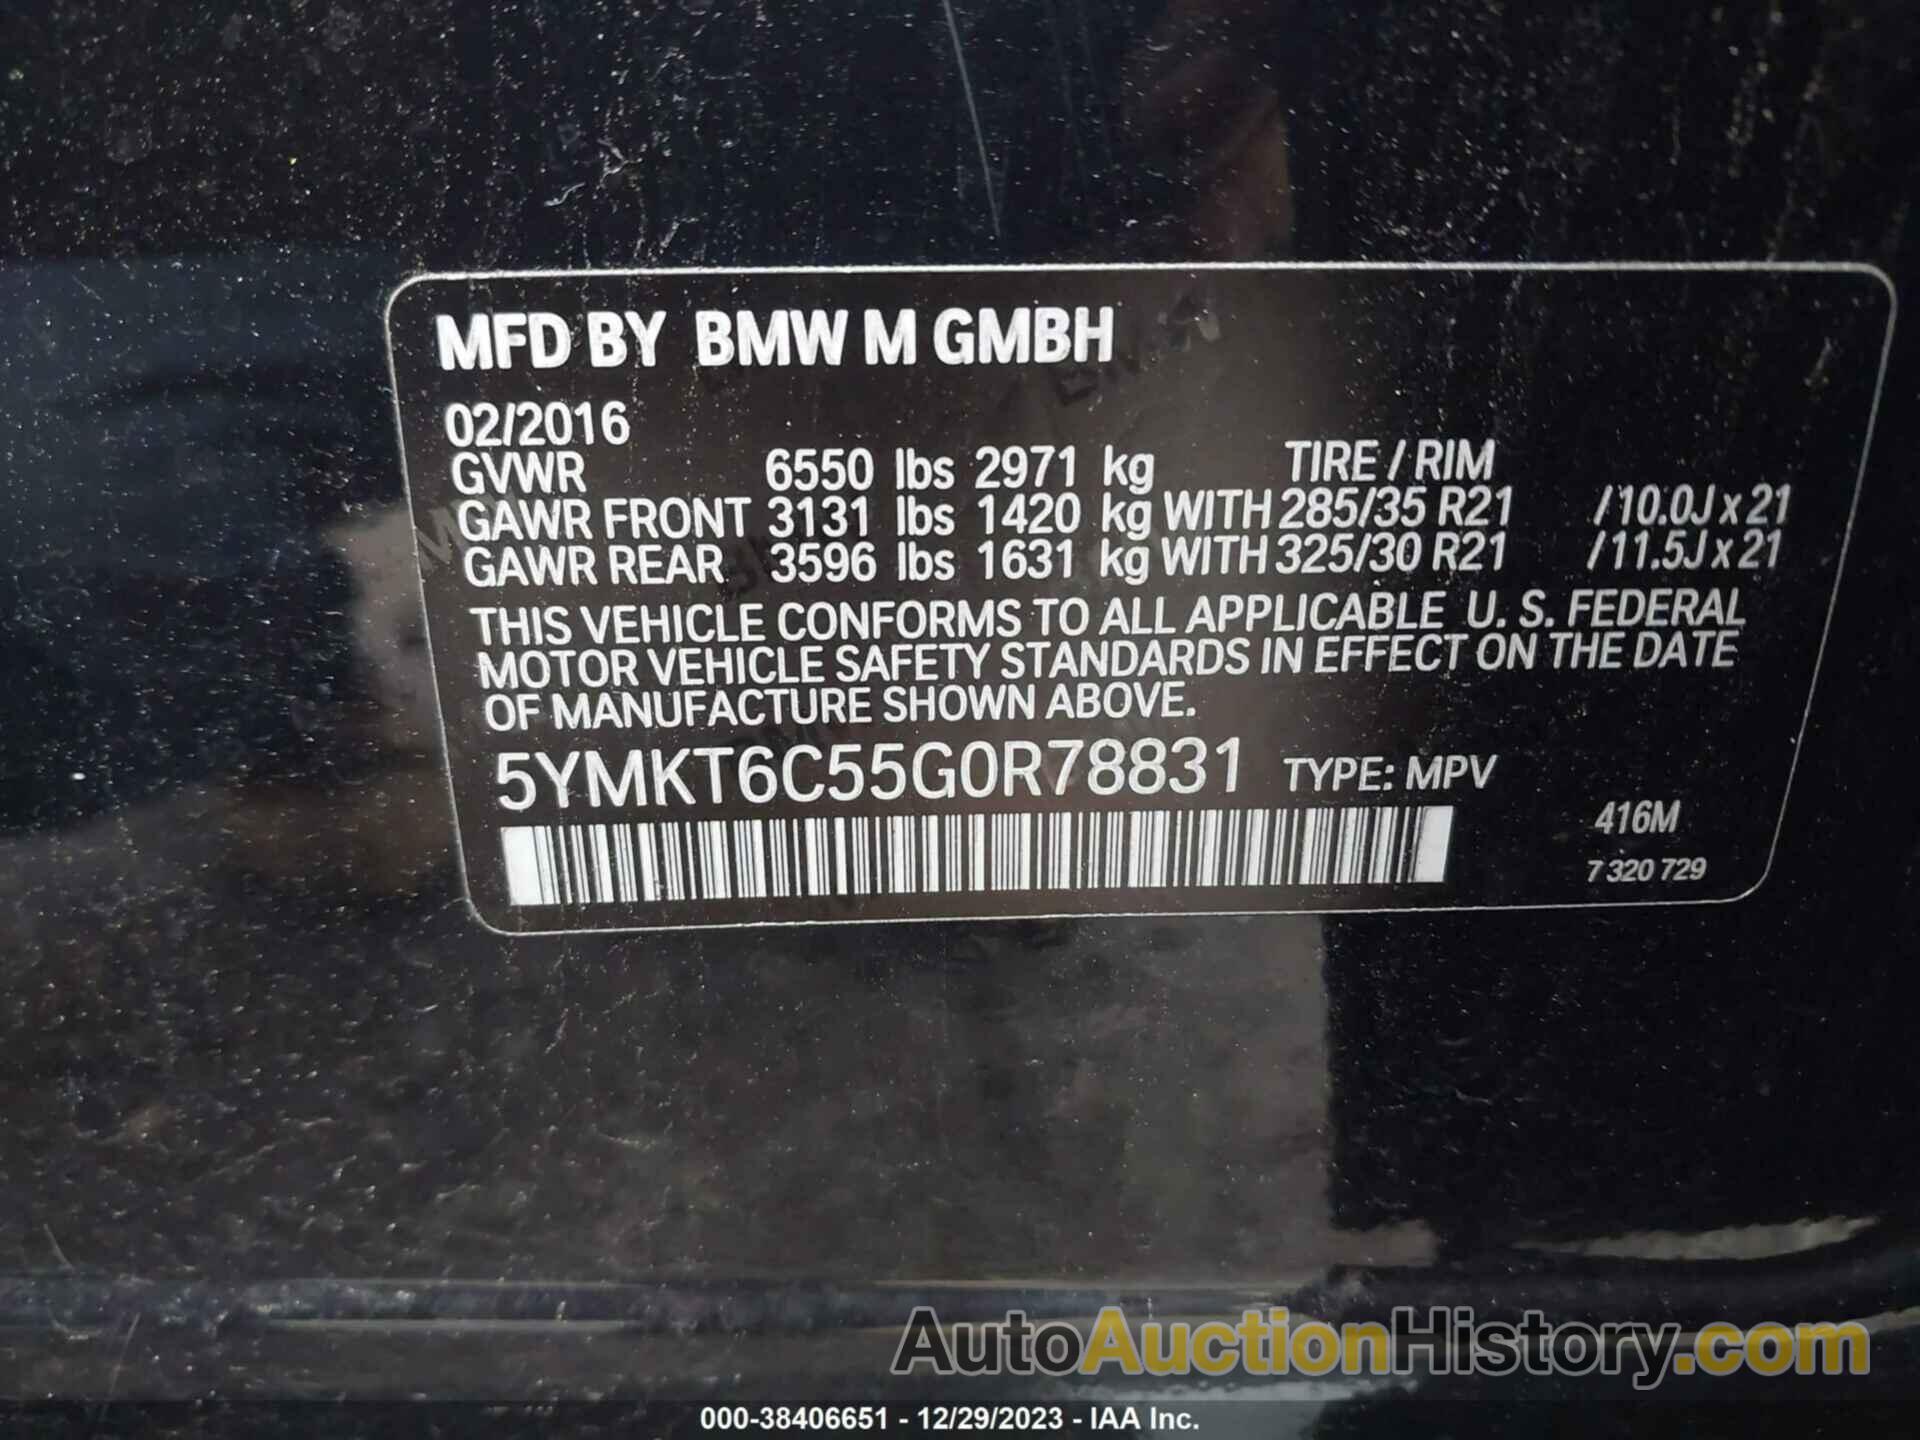 BMW X5 M, 5YMKT6C55G0R78831